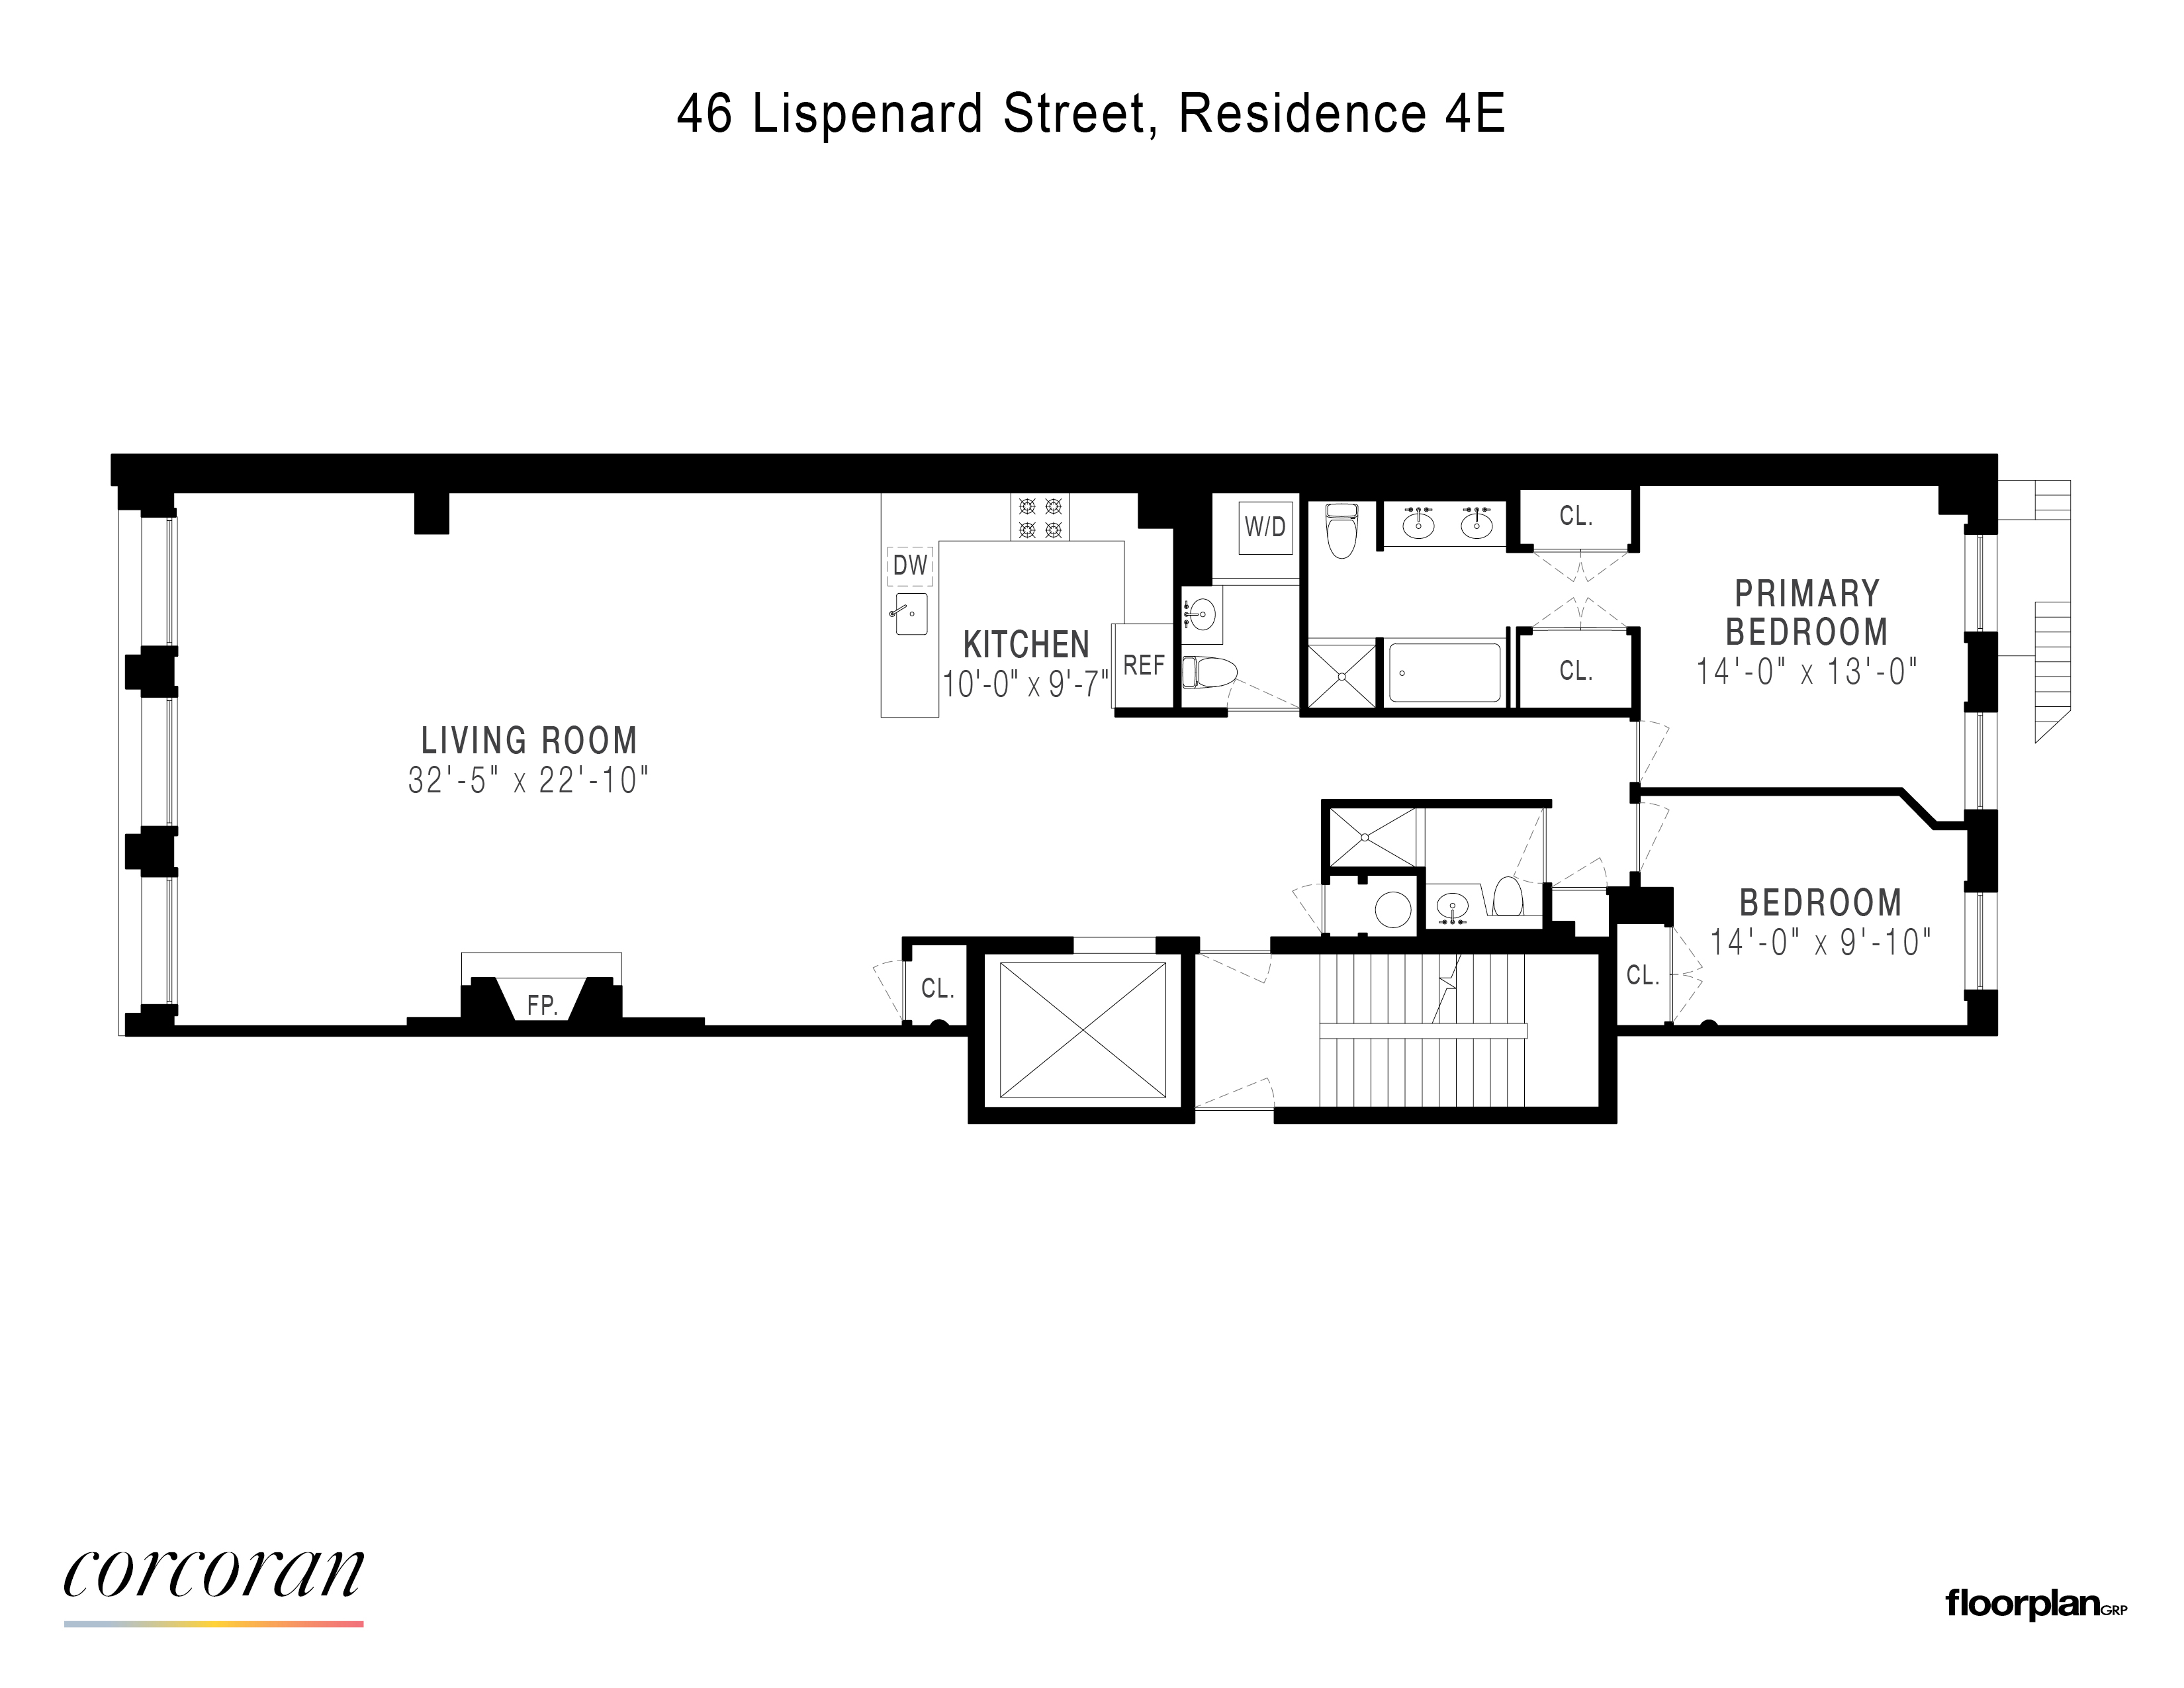 Floorplan for 46 Lispenard Street, 4E